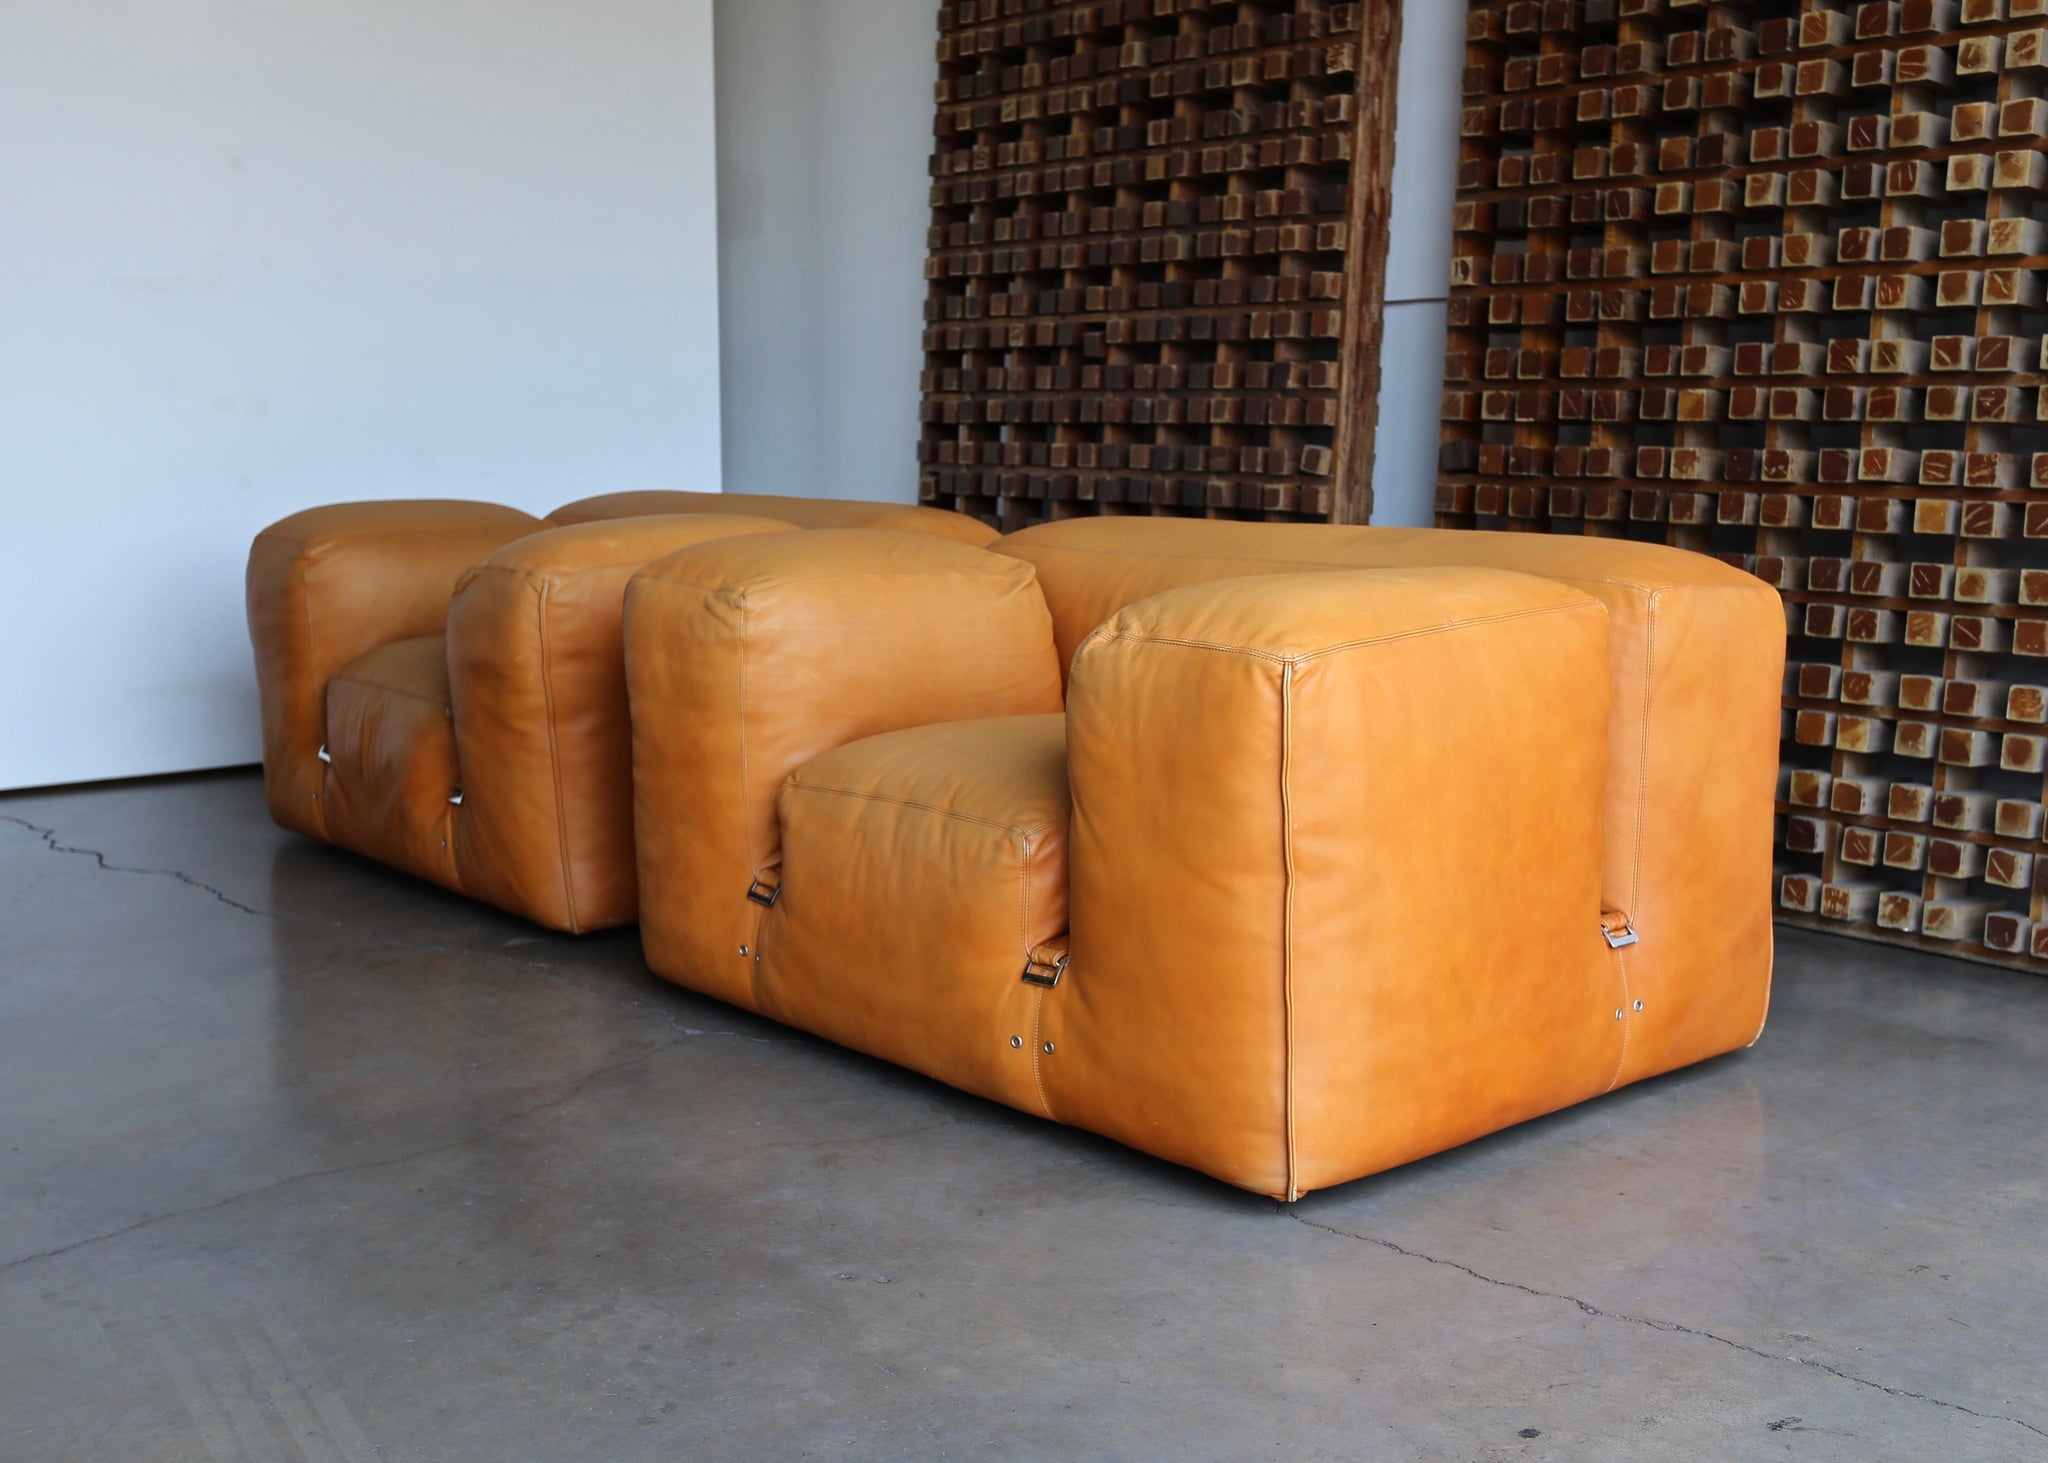 = SOLD  = Mario Bellini "LE MURA" Lounge Chairs for Cassina, circa 1972